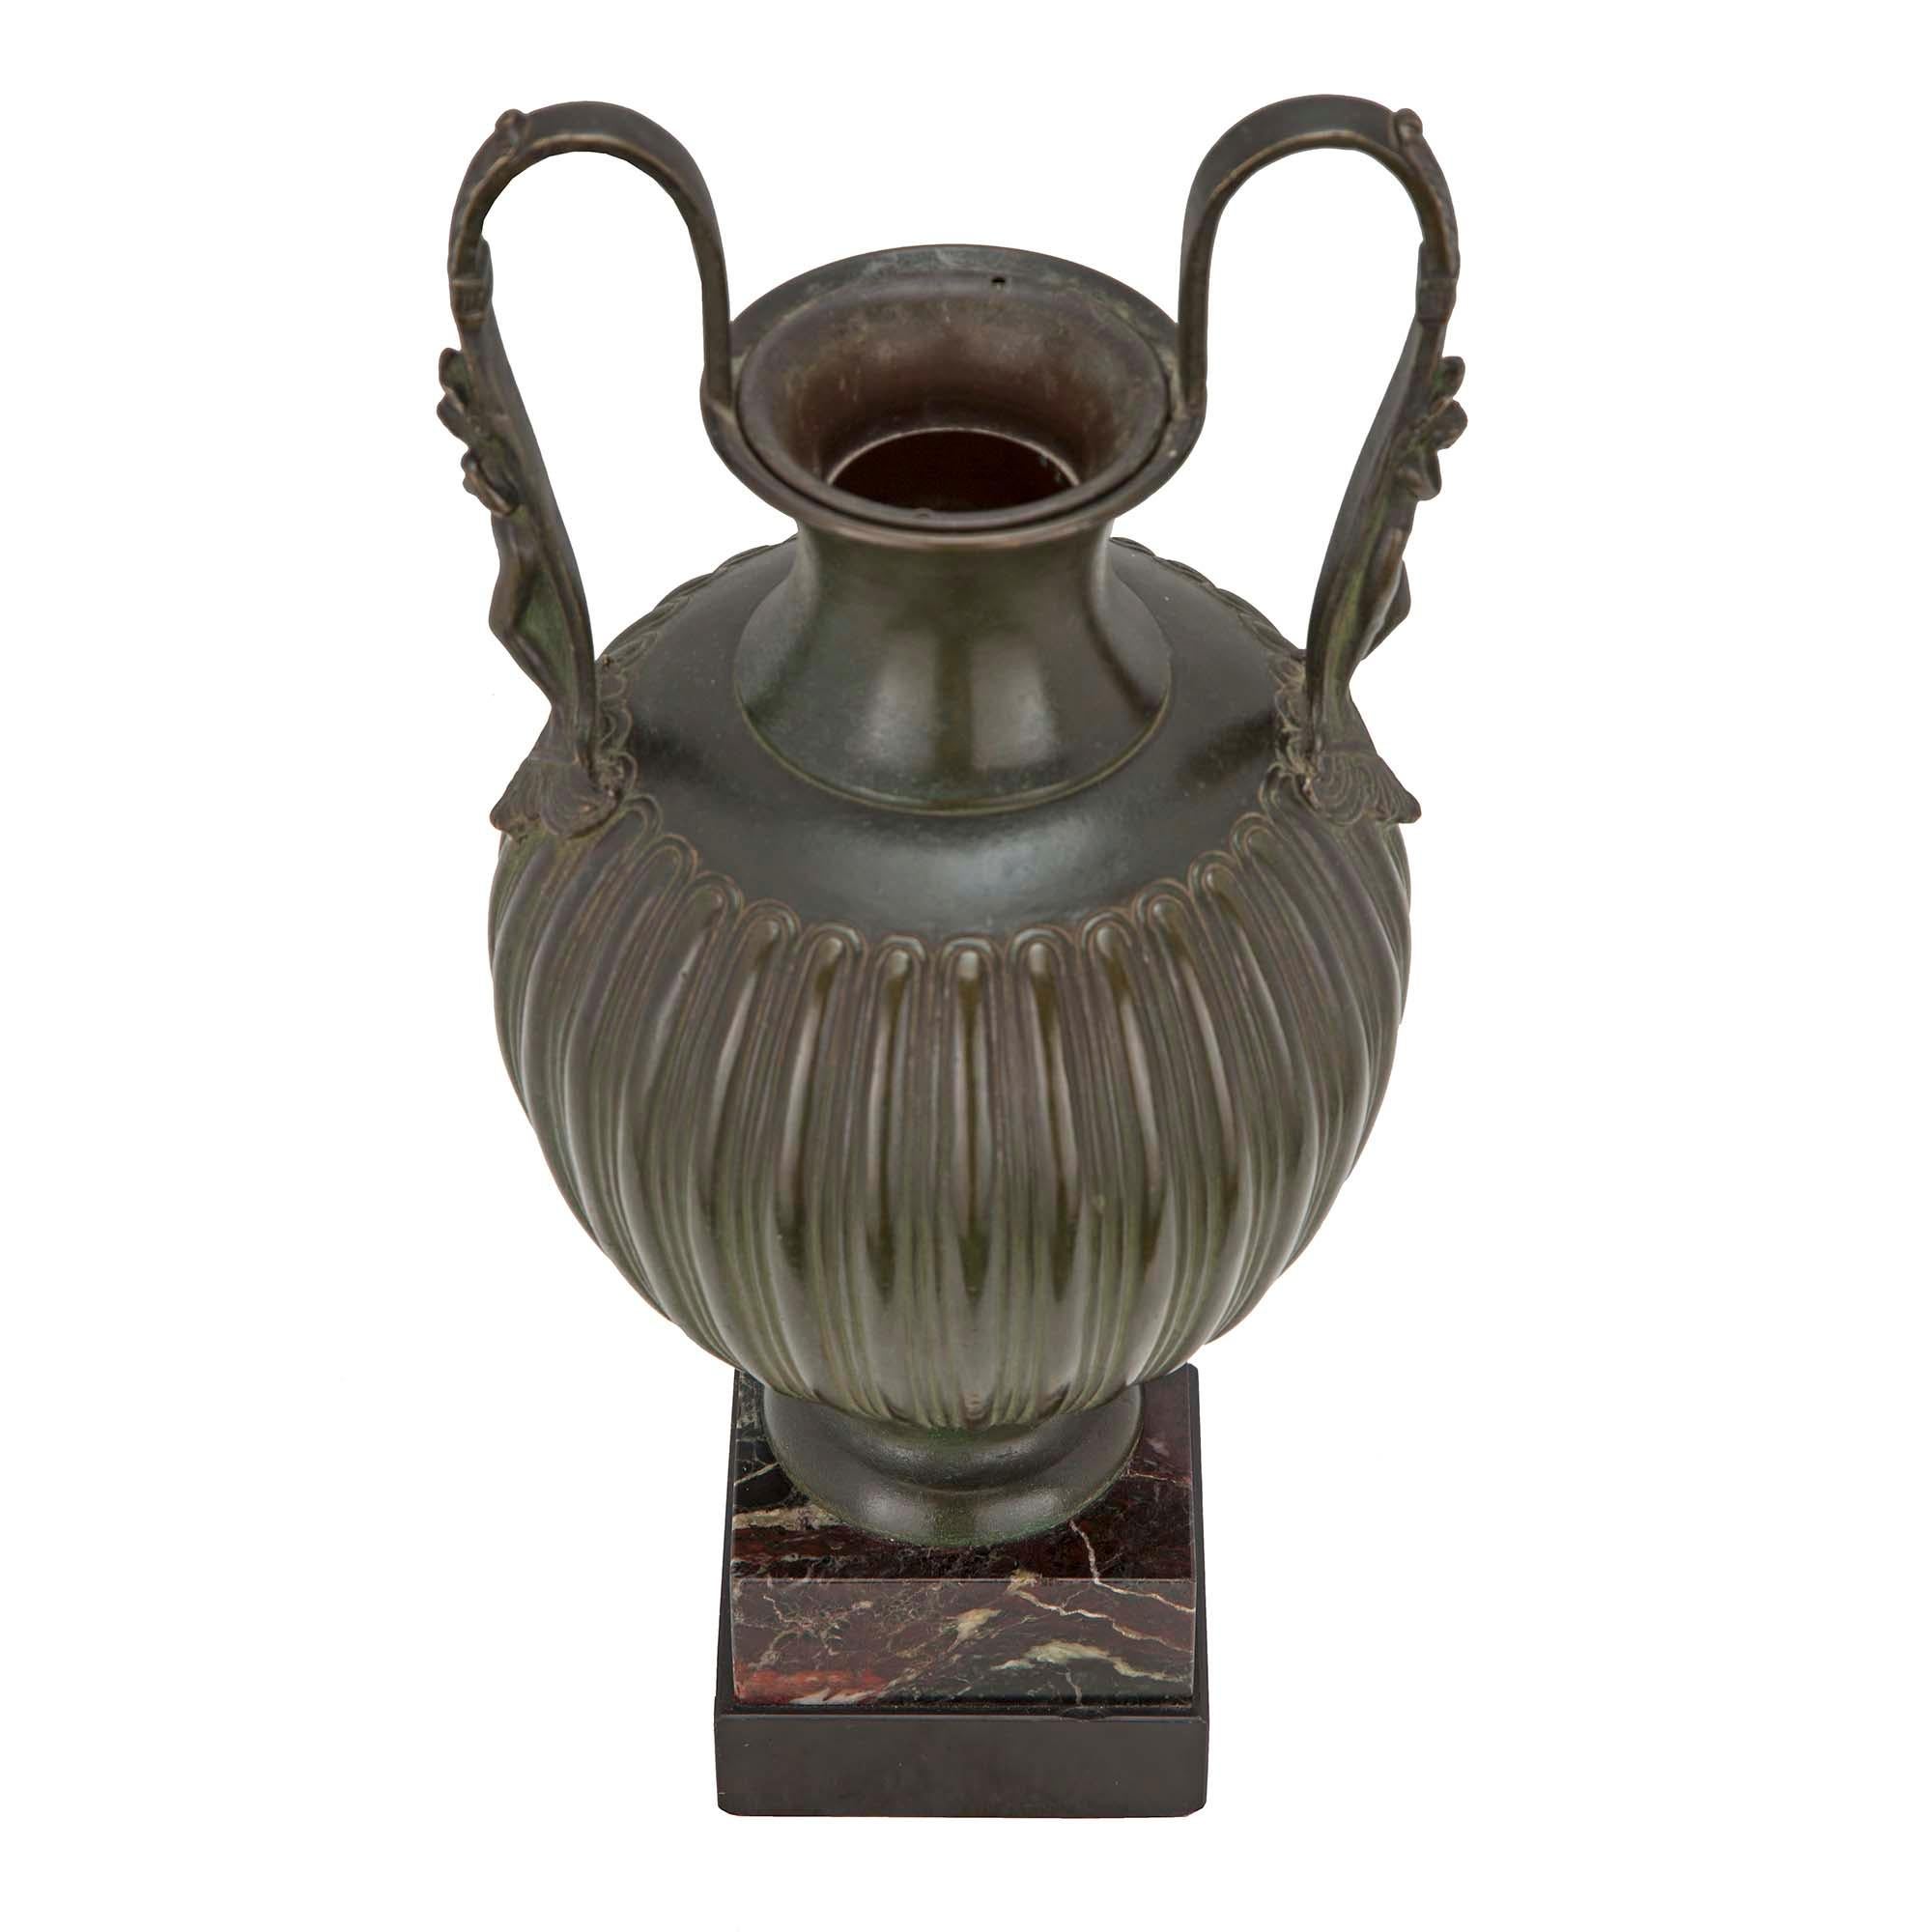 Très belle urne néo-classique française du XIXe siècle en bronze patiné vert-de-gris. L'urne repose sur une base carrée en marbre. La belle urne en bronze vert-de-gris patiné a une forme balustre en roseau. De chaque côté se trouvent d'élégantes